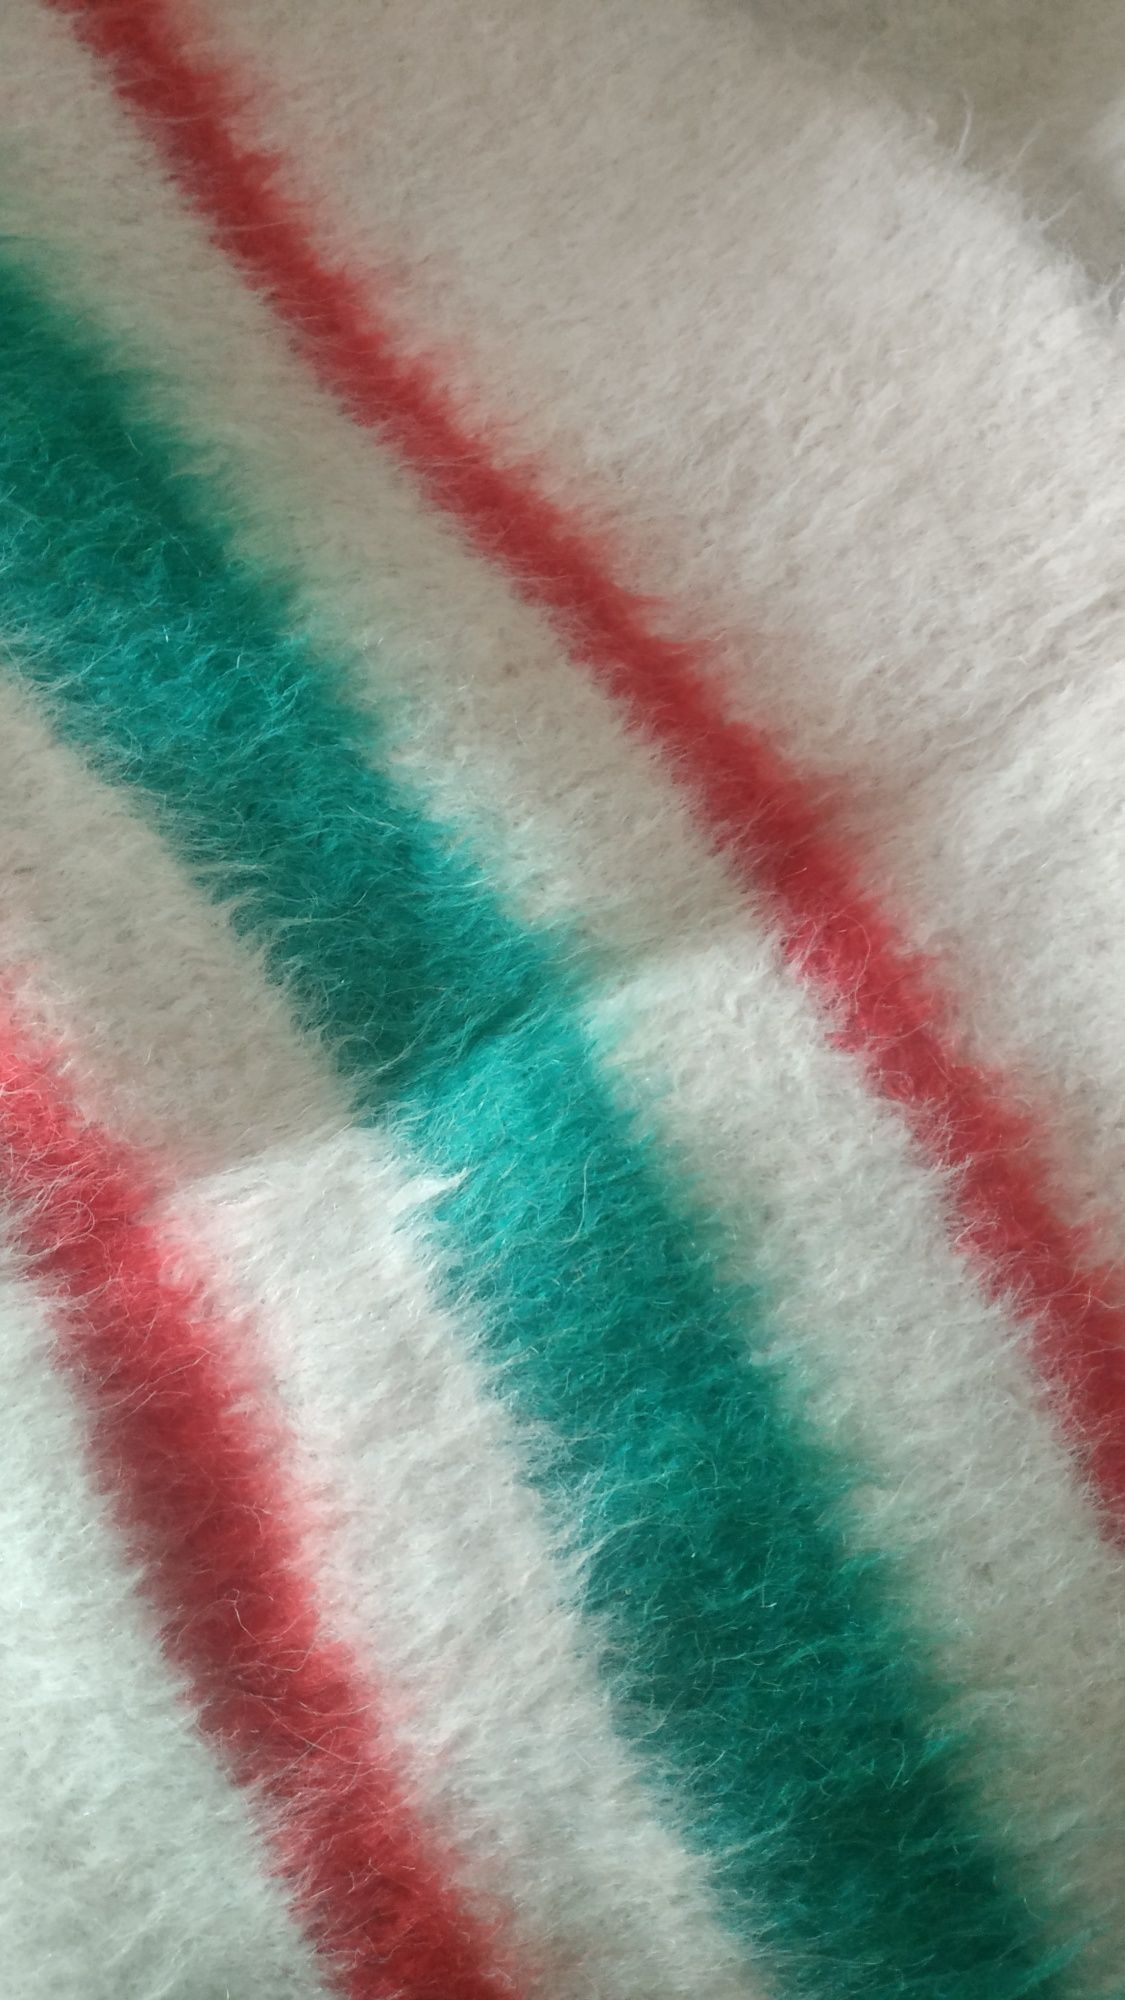 Cobertor de Papa - Riscas Colorido